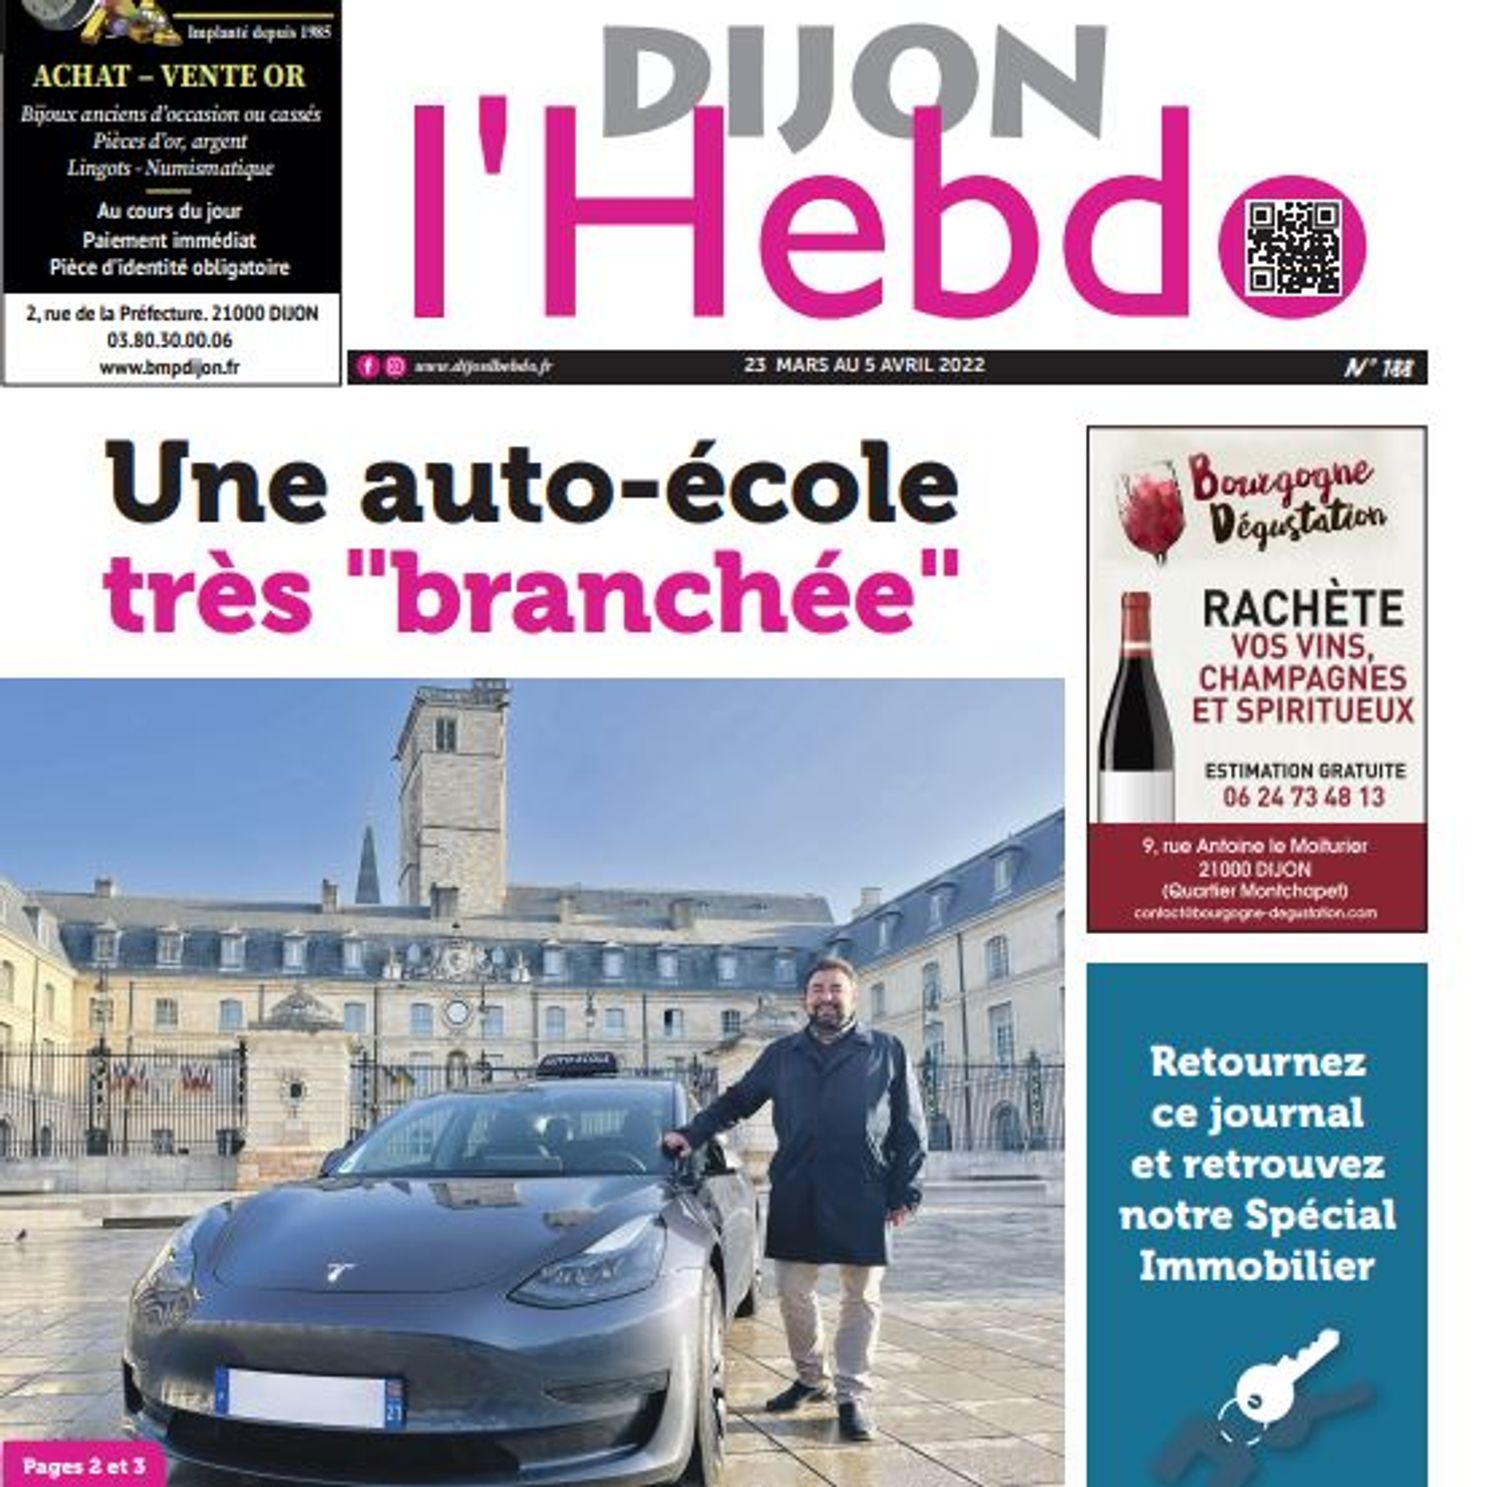 Le nouveau numéro du journal Dijon l'hebdo 